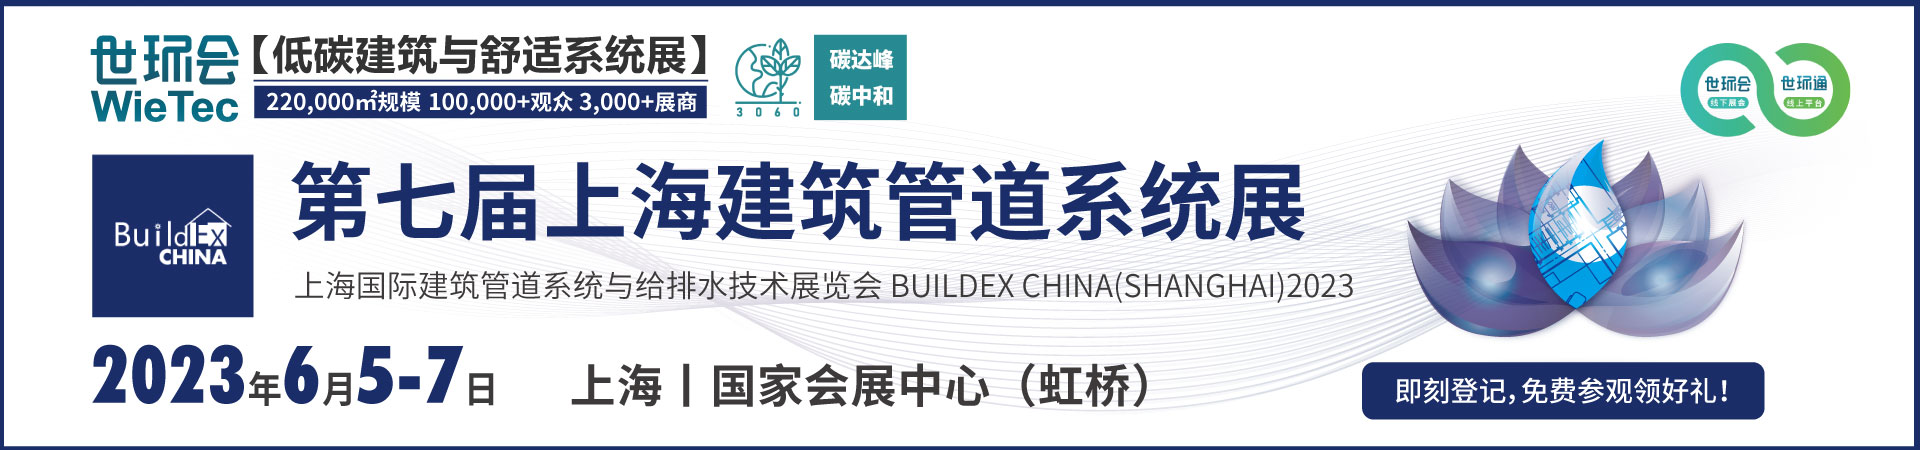 BUILDEX CHINA (SHANGHAI) 2023.jpg